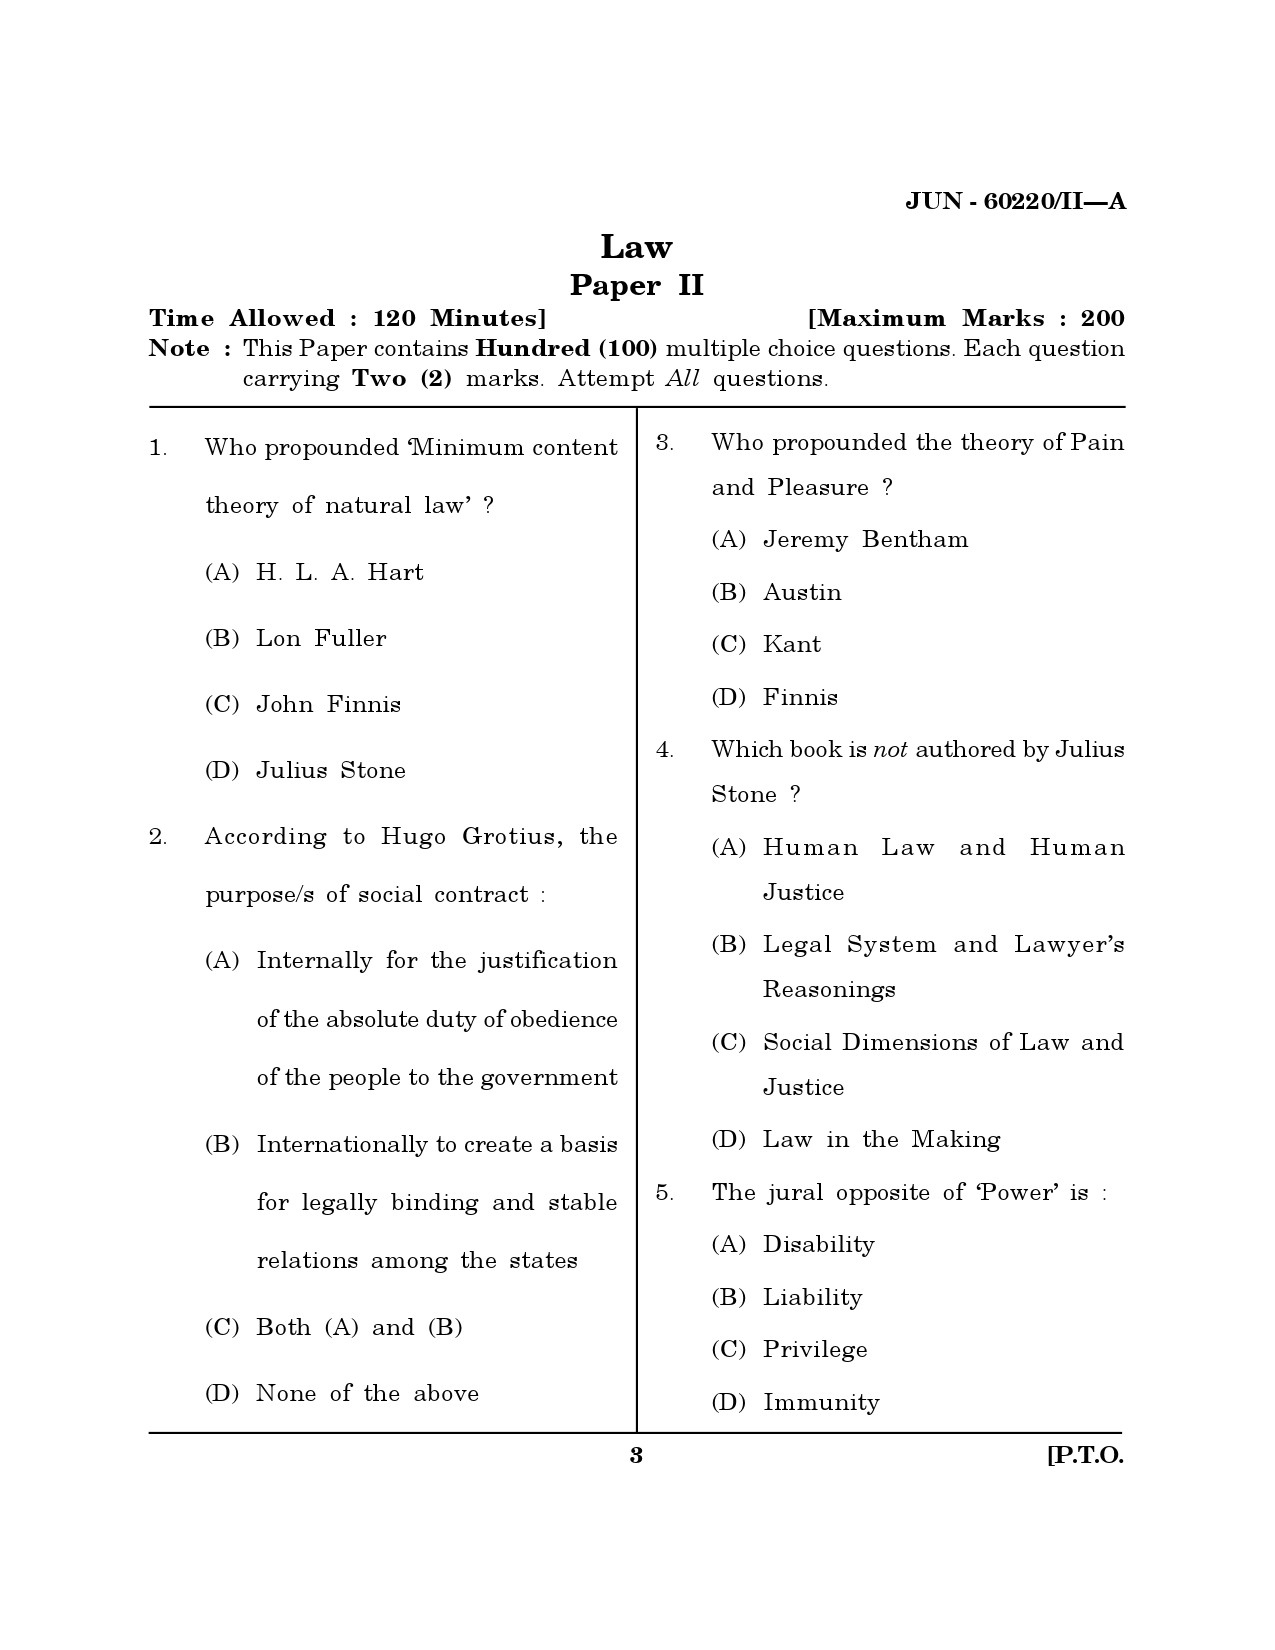 Maharashtra SET Law Question Paper II June 2020 2